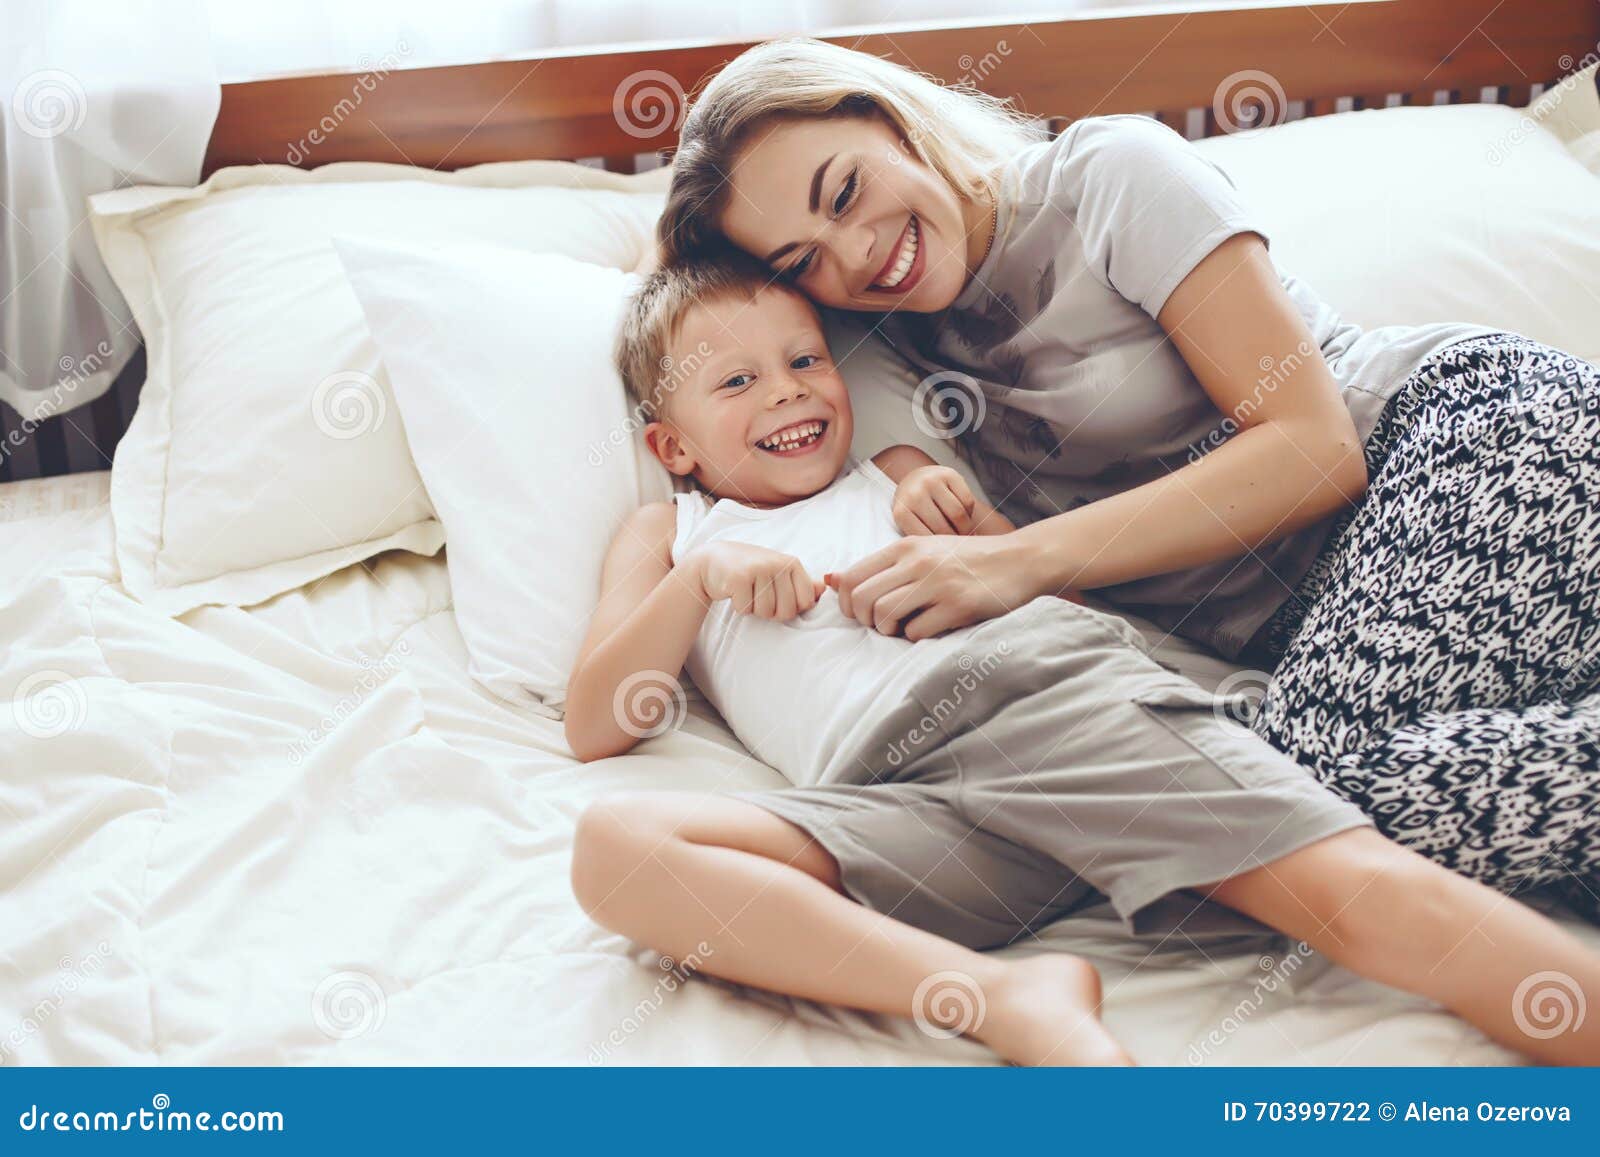 Жена в постели сына. Мама у кровати ребенка. Фотосессия мама с сыном в постели. Фотосессия на кровати с ребенком и мамой. Кровать для сына.